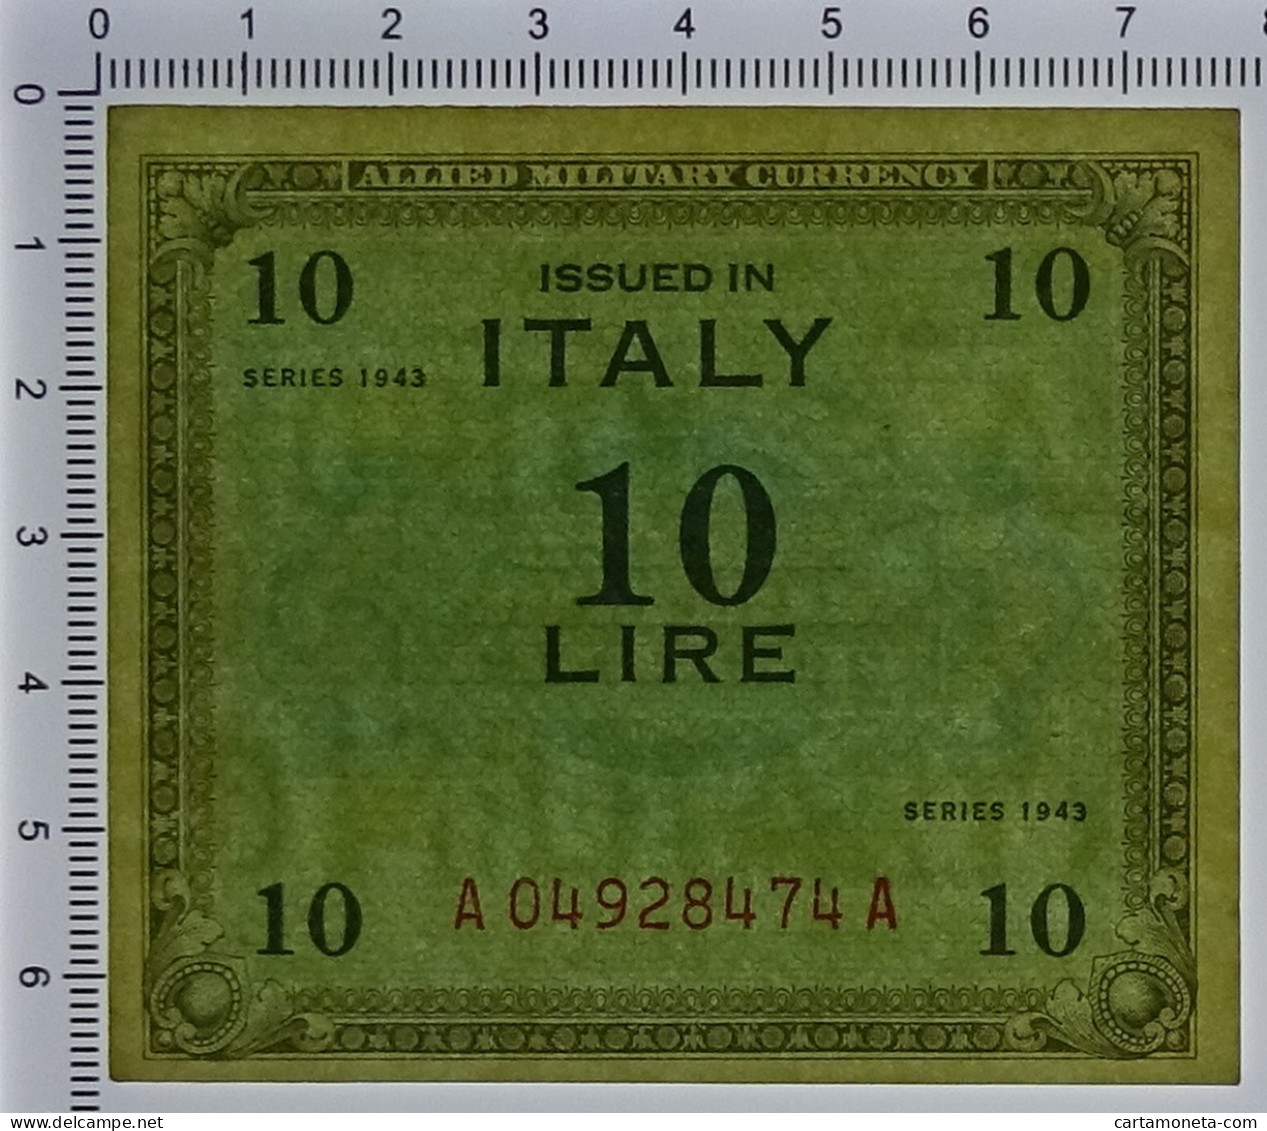 10 LIRE OCCUPAZIONE AMERICANA IN ITALIA MONOLINGUA BEP 1943 SUP+ - 2. WK - Alliierte Besatzung